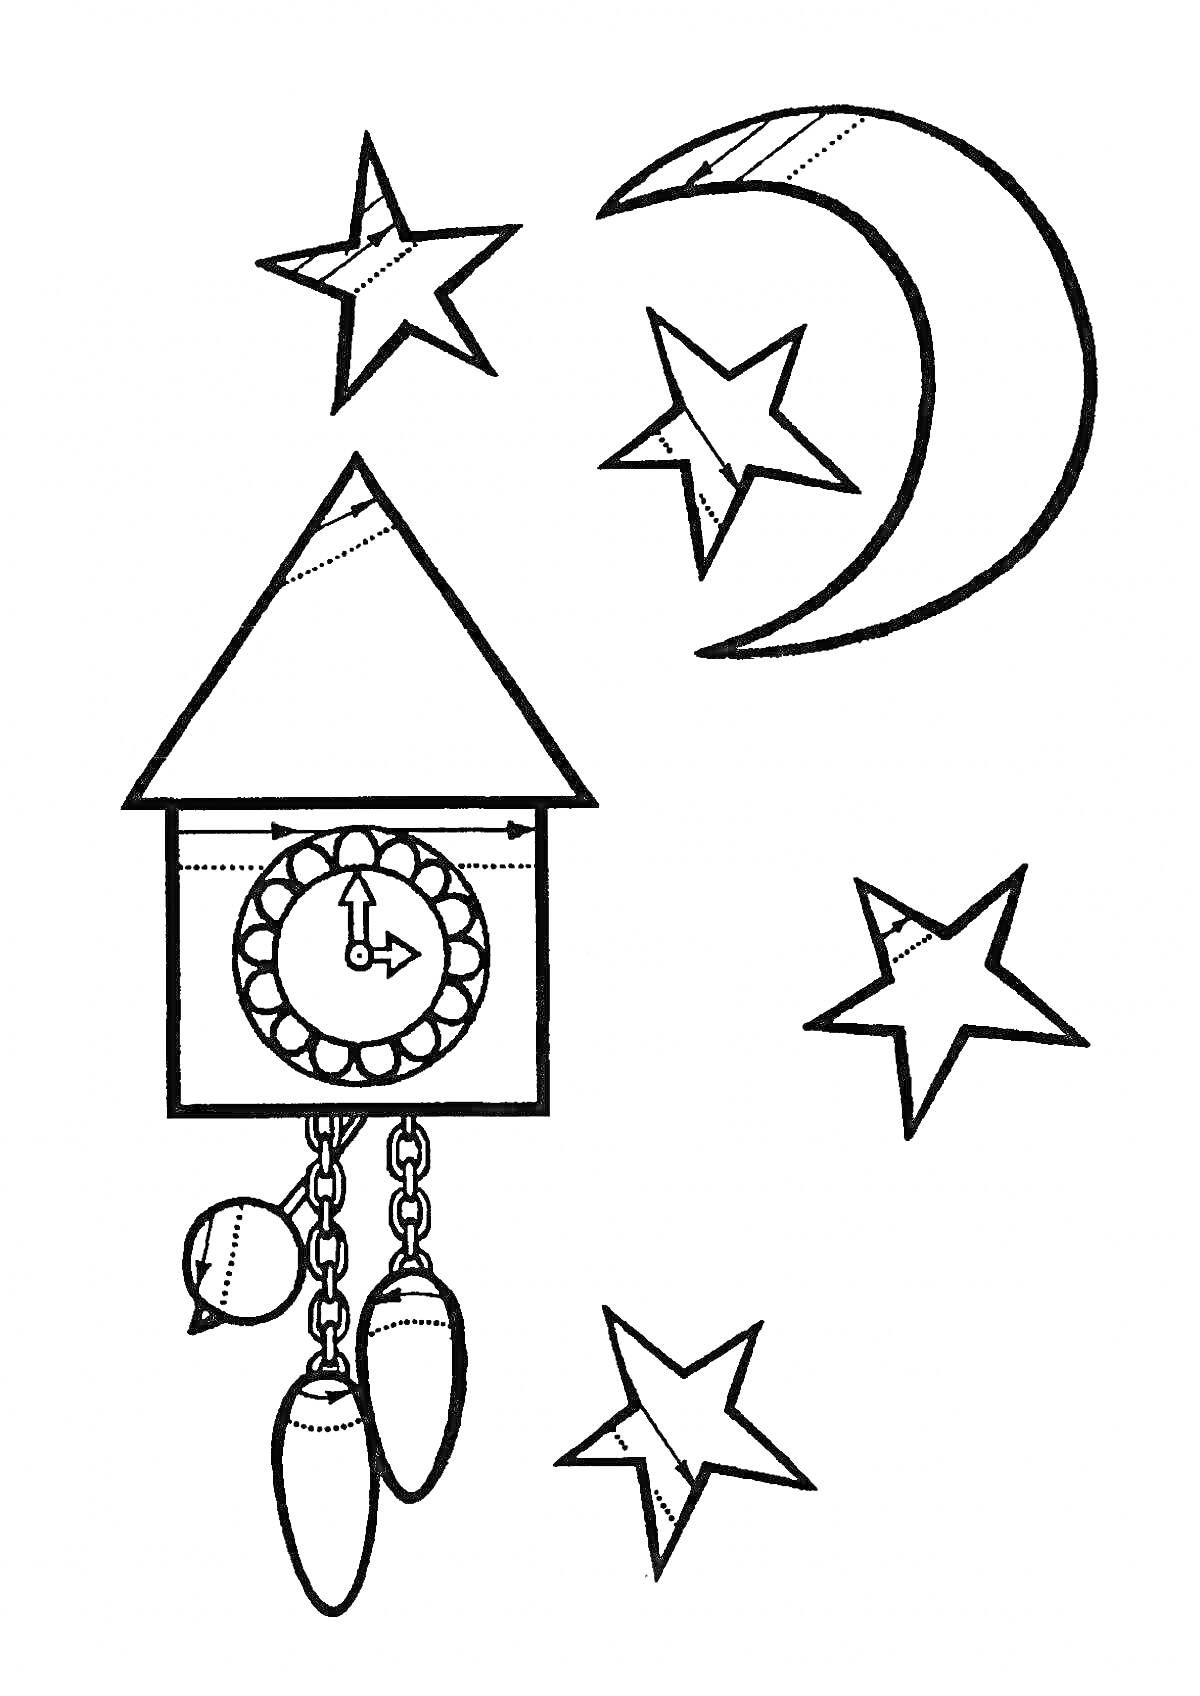 Кукушечные часы с маятником и звездочками на фоне полумесяца